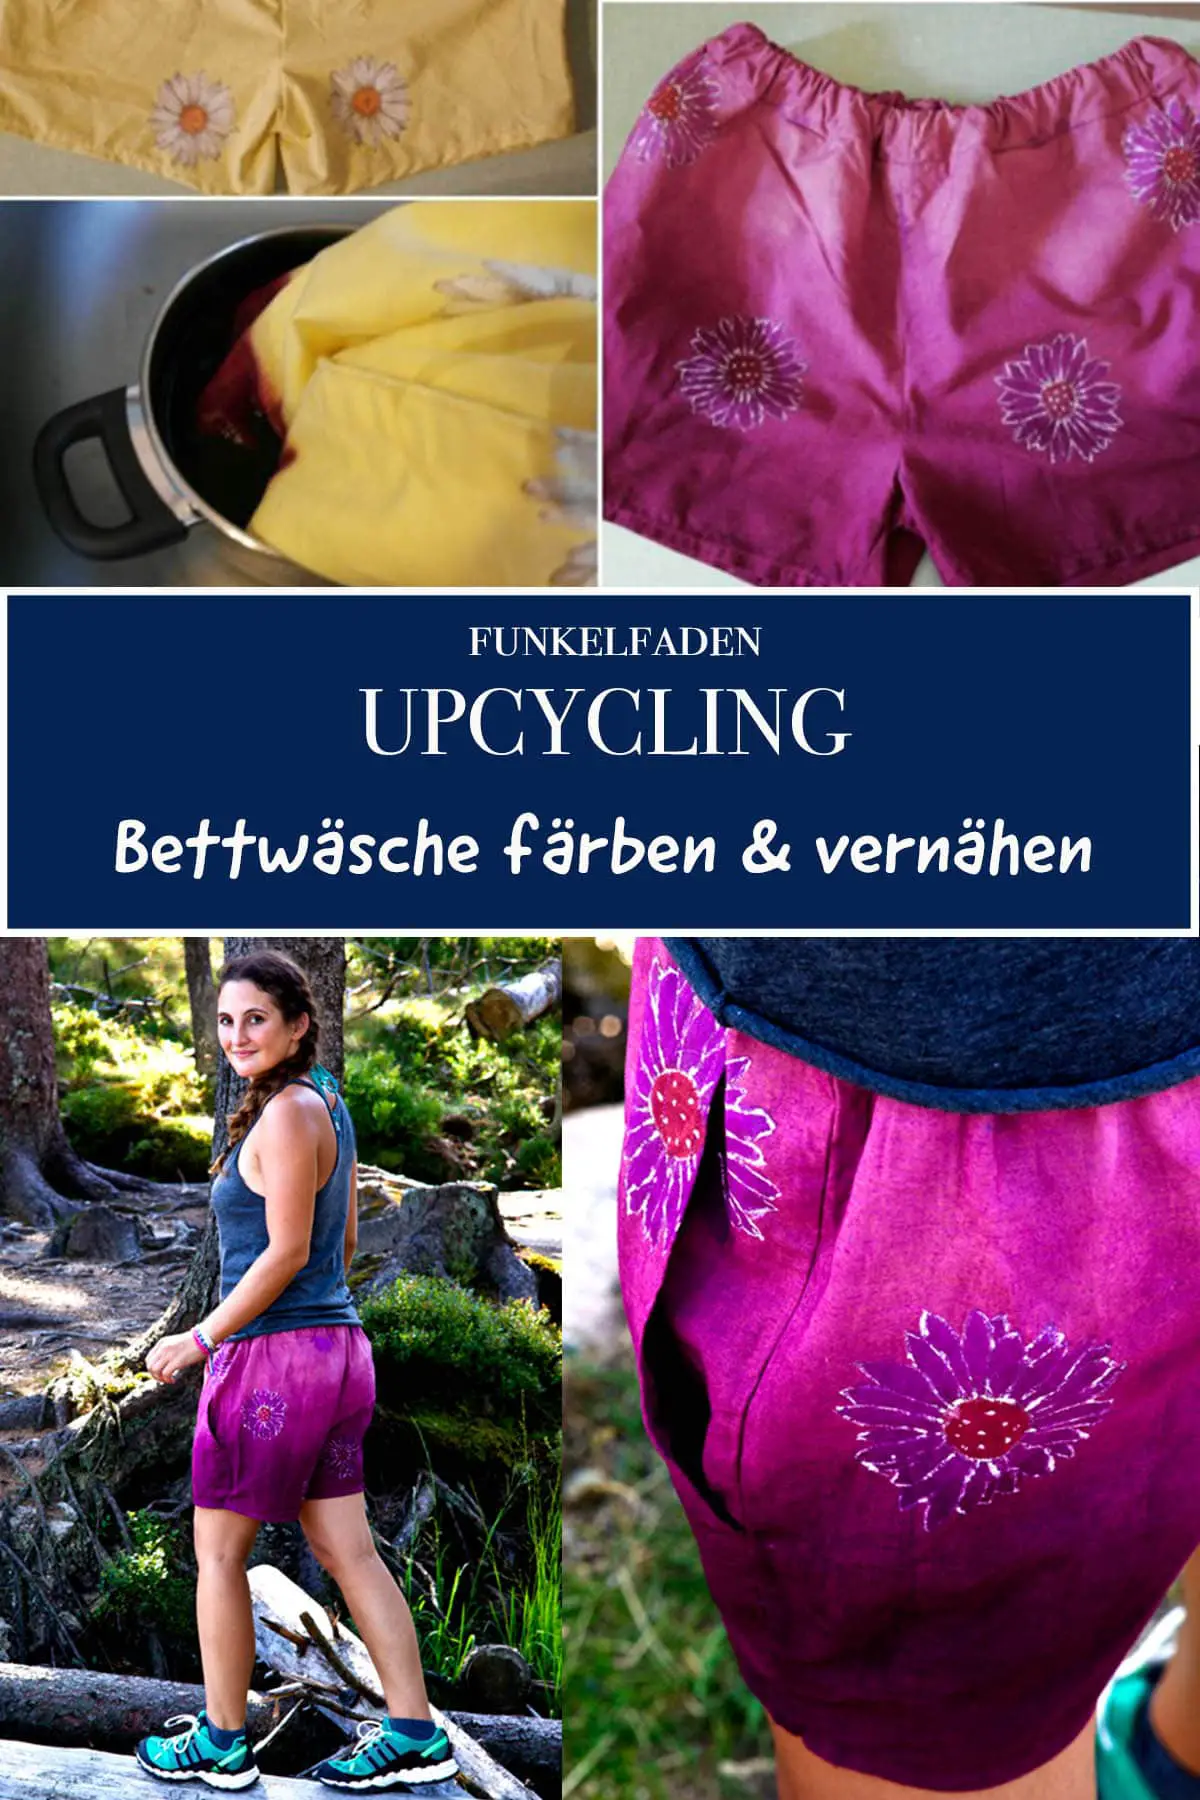 Upcycling - nähen aus alter Bettwäsche & Stoff färben